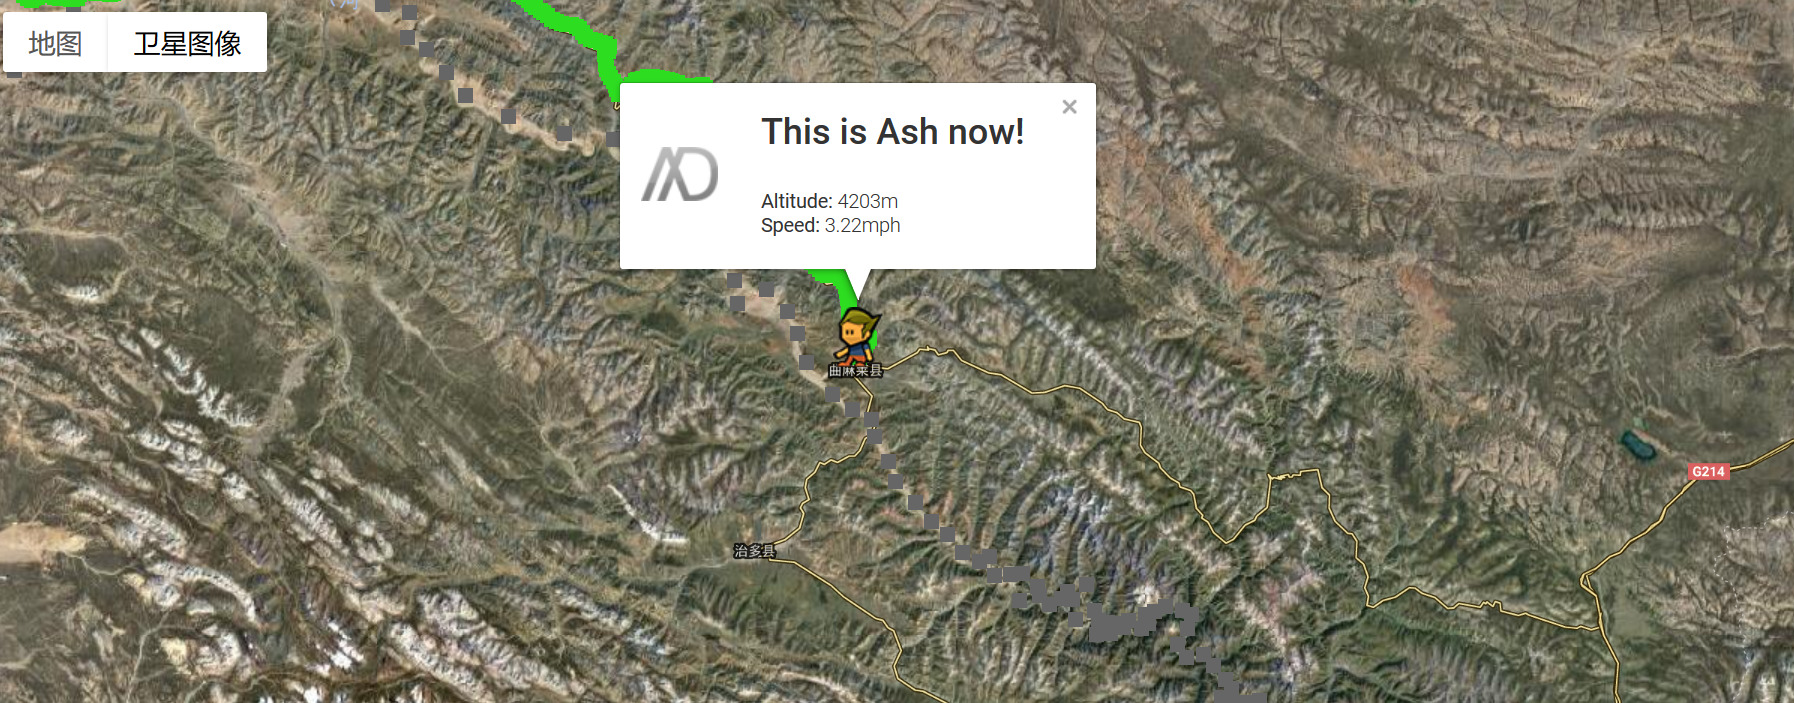 GPS卫星定位图像显示Ash目前所在位置.jpg